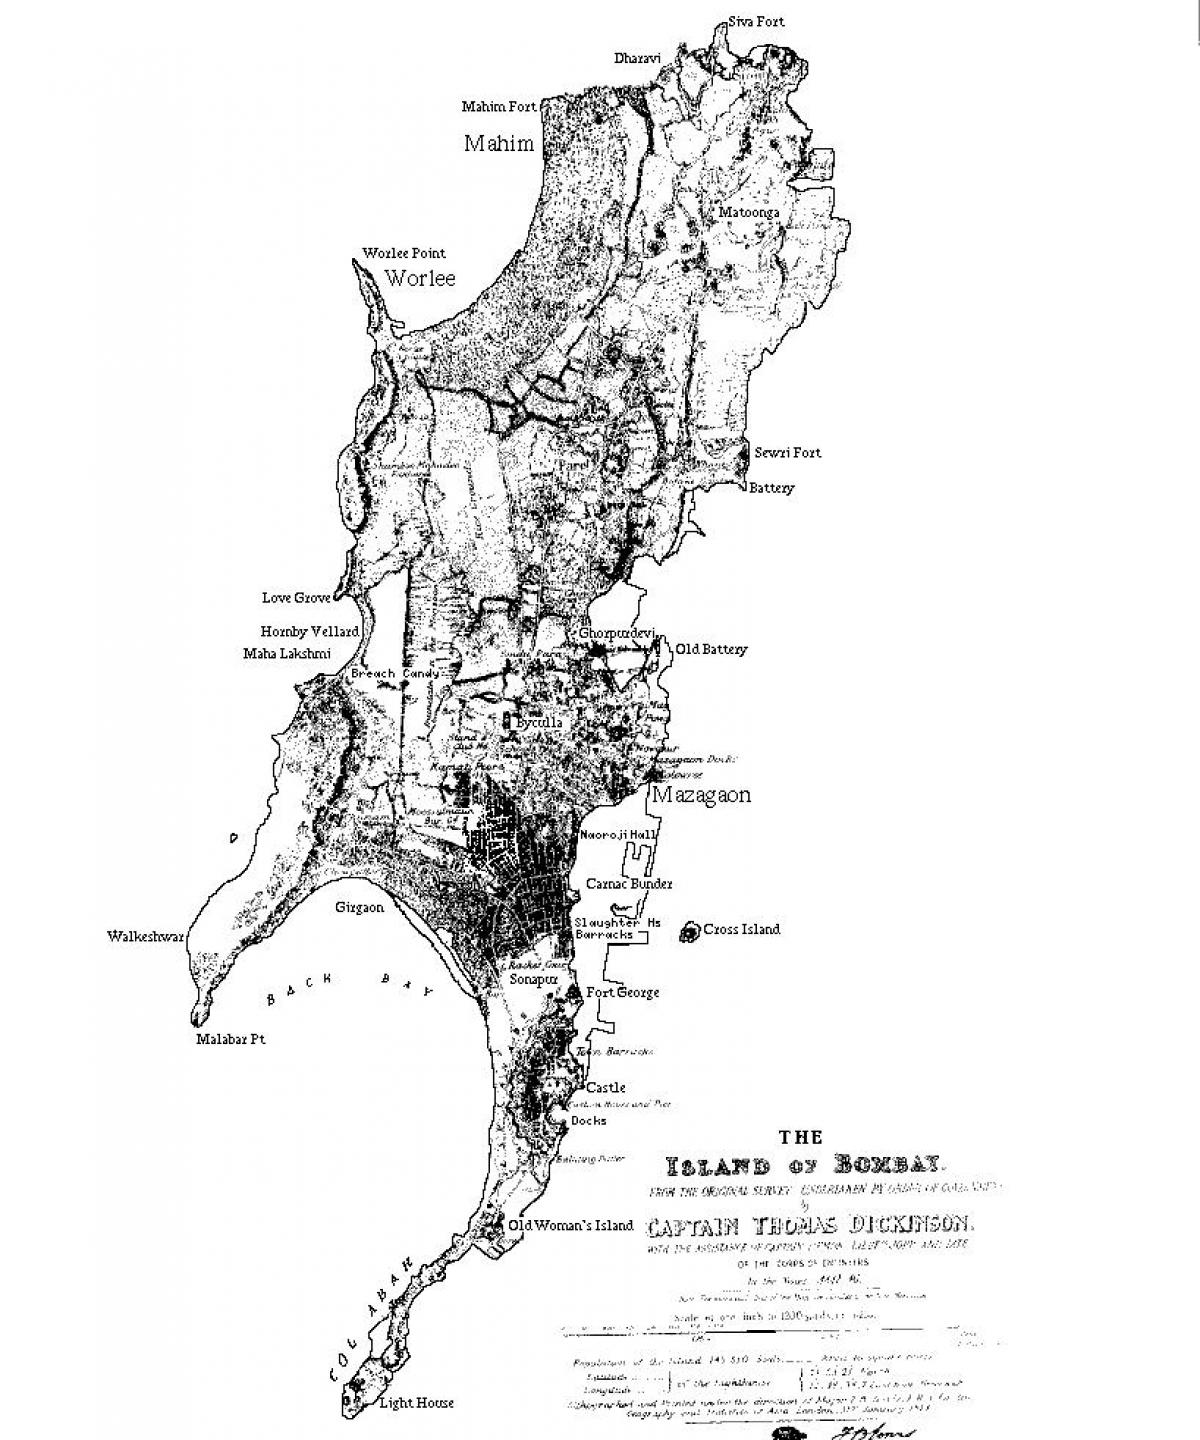 نقشہ ممبئی کے جزیرے